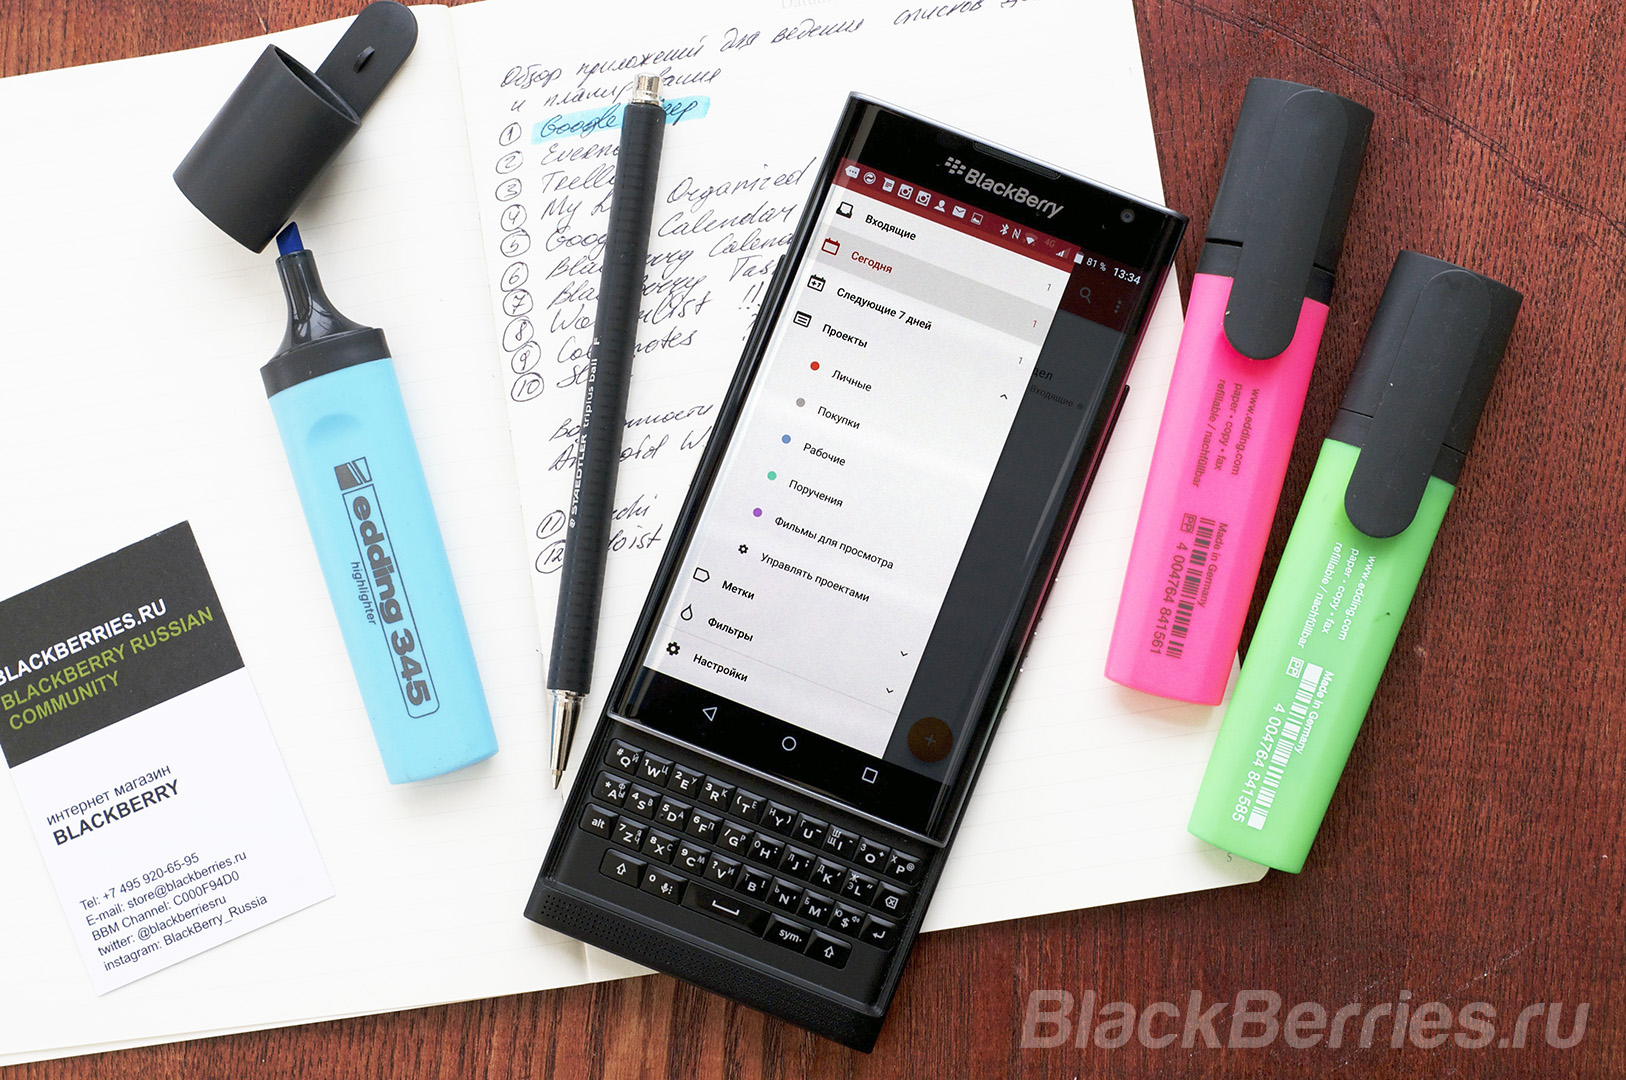 BlackBerry-Apps-20-02-18